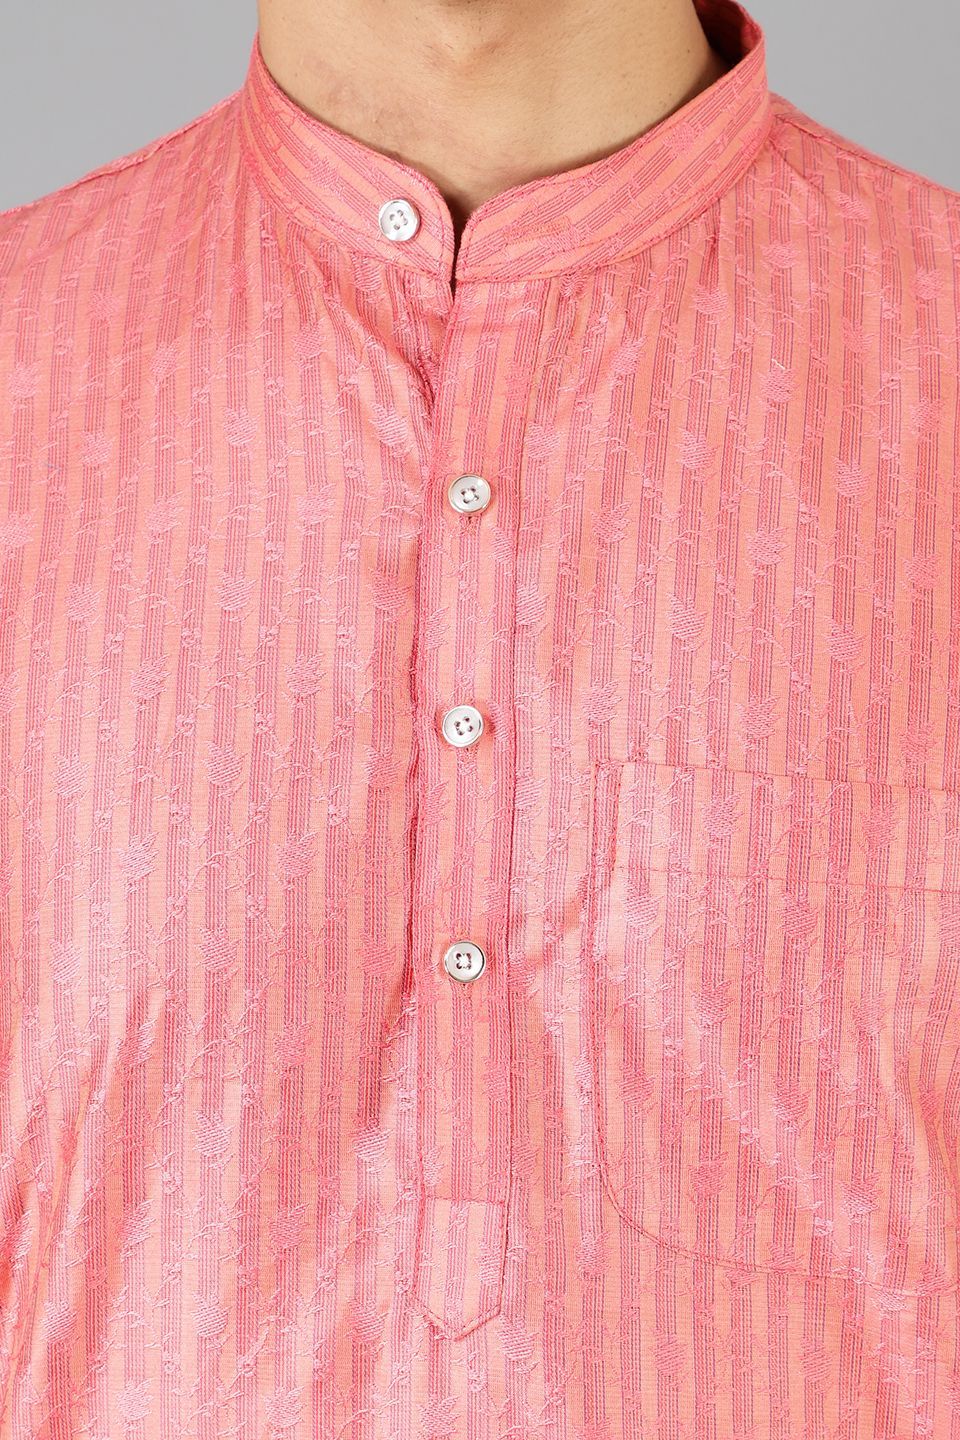 Banarasi Rayon Cotton Pink Kurta Pajama